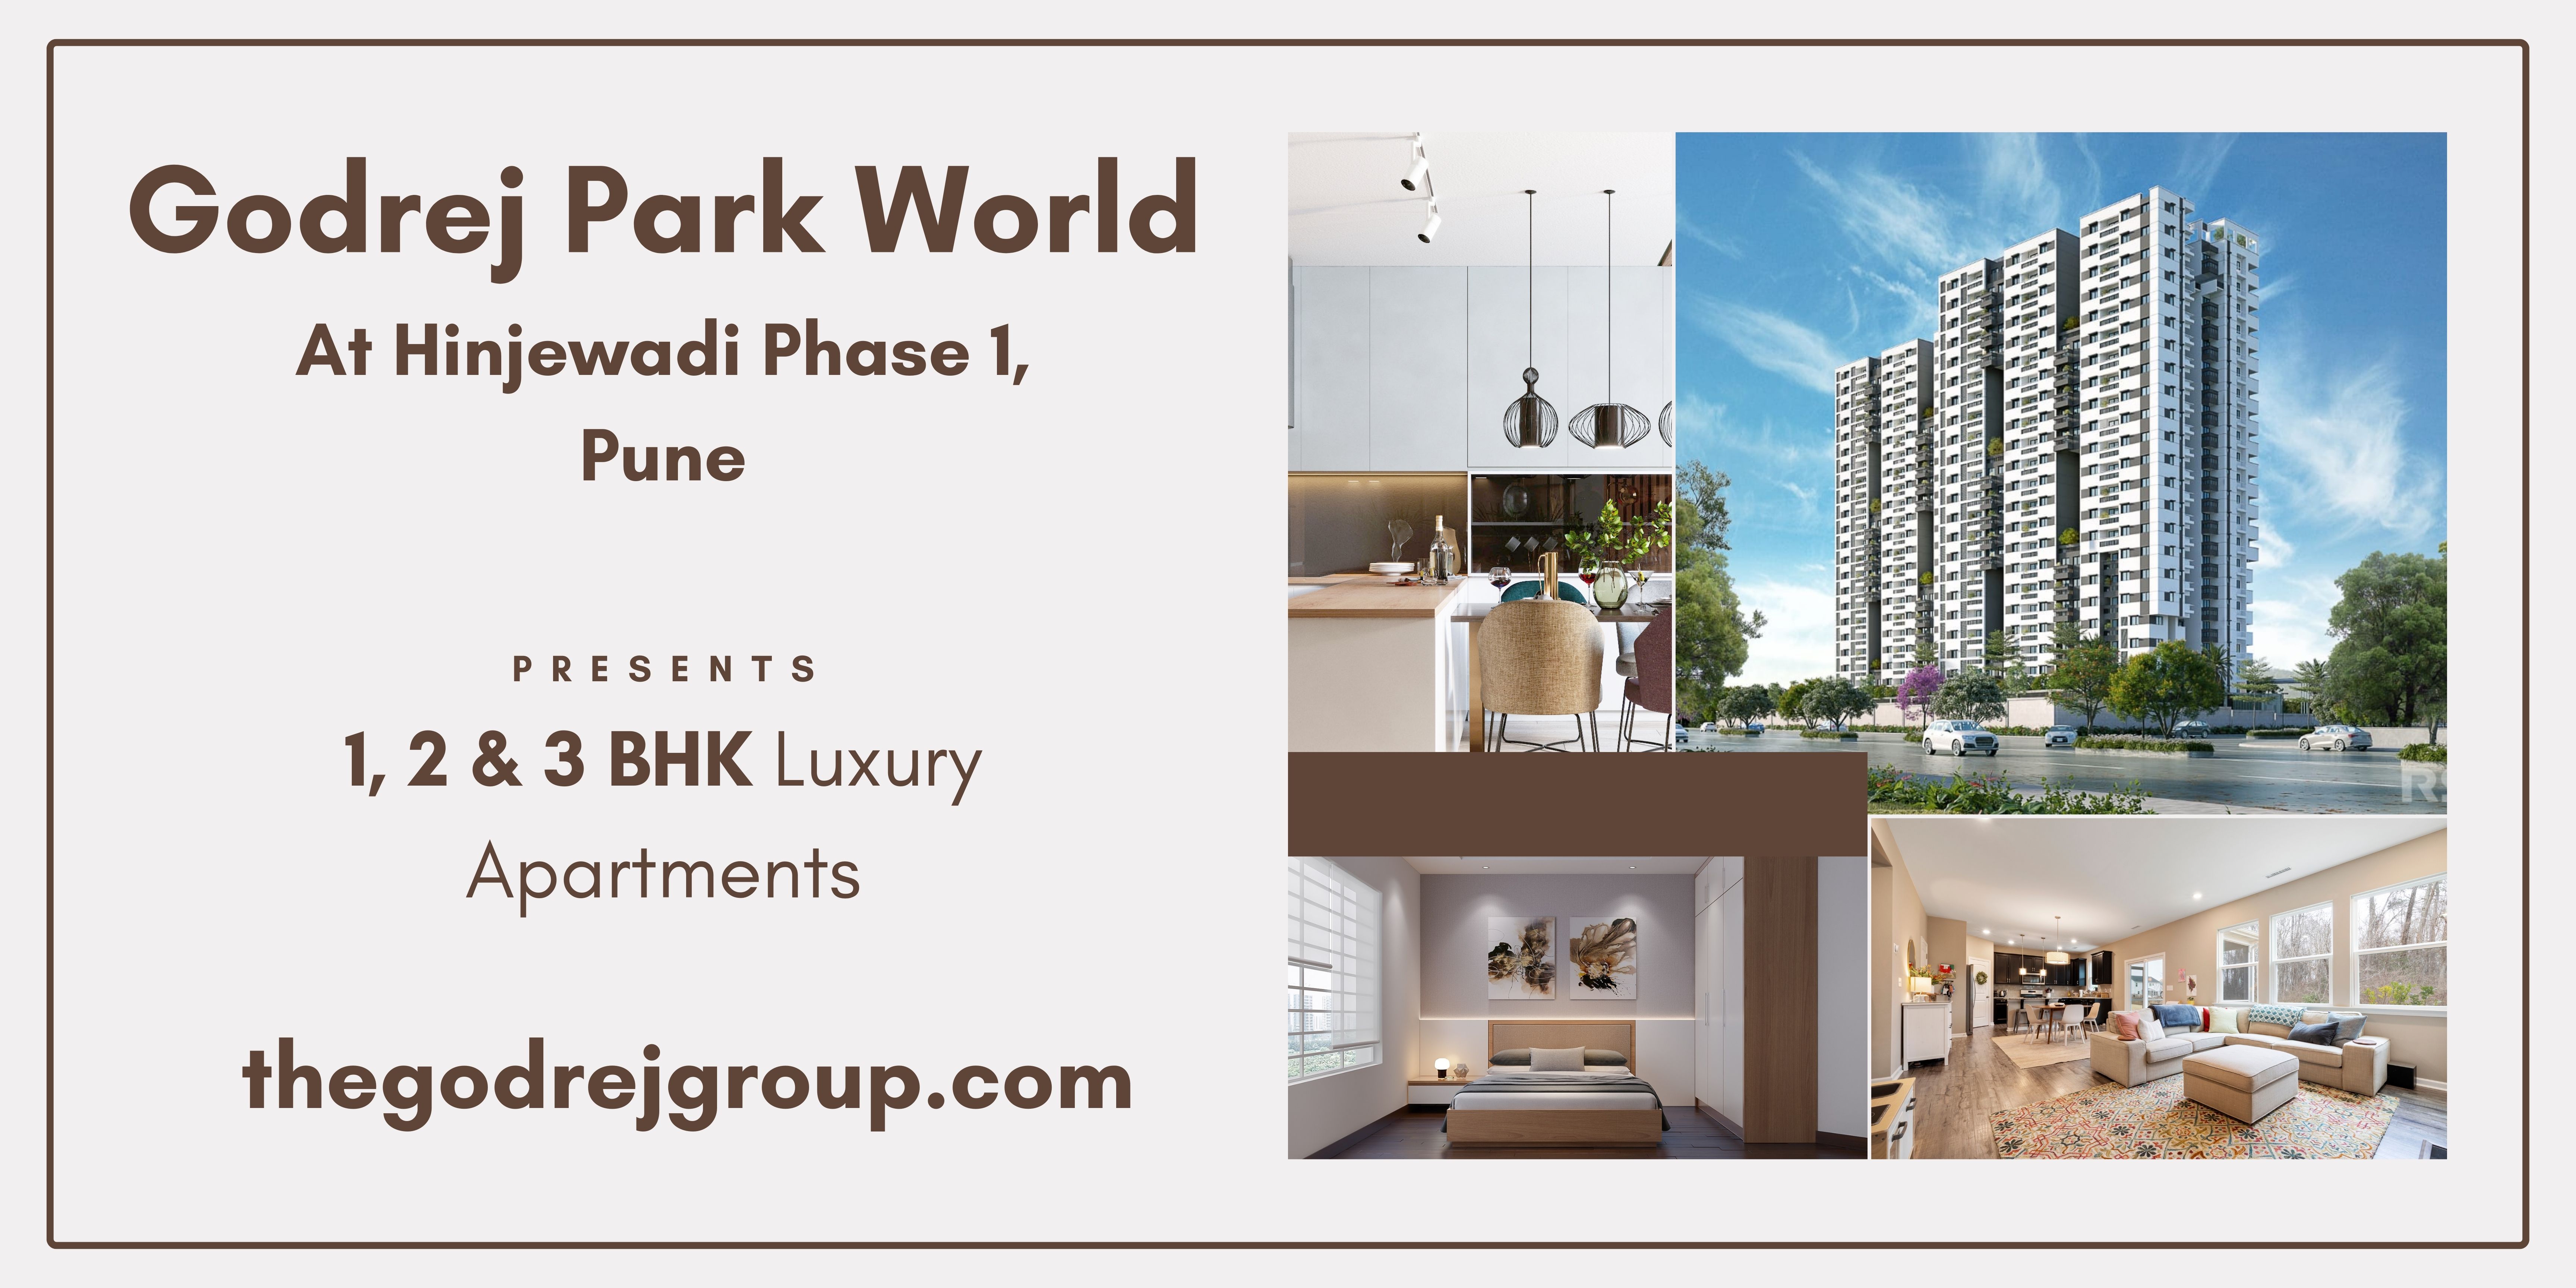 Godrej Park World At Hinjewadi Phase 1 Pune - Stepping Towards A New Life!